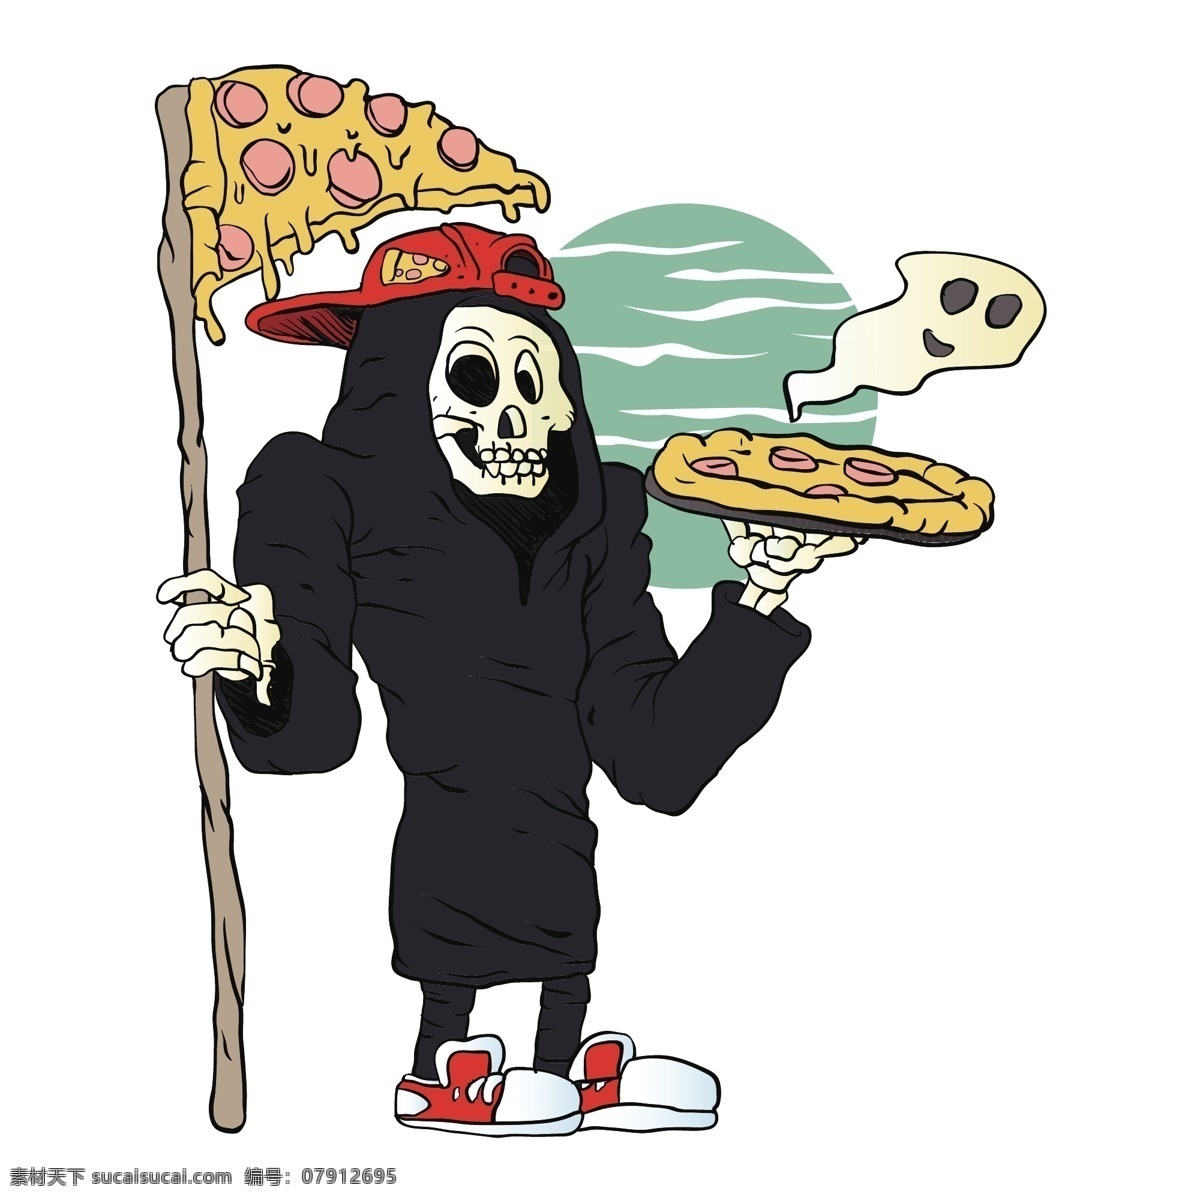 捧 披萨 骷髅 僵尸 捧着 t恤 印花图案 卡通插画 流行元素 底纹边框 矢量素材